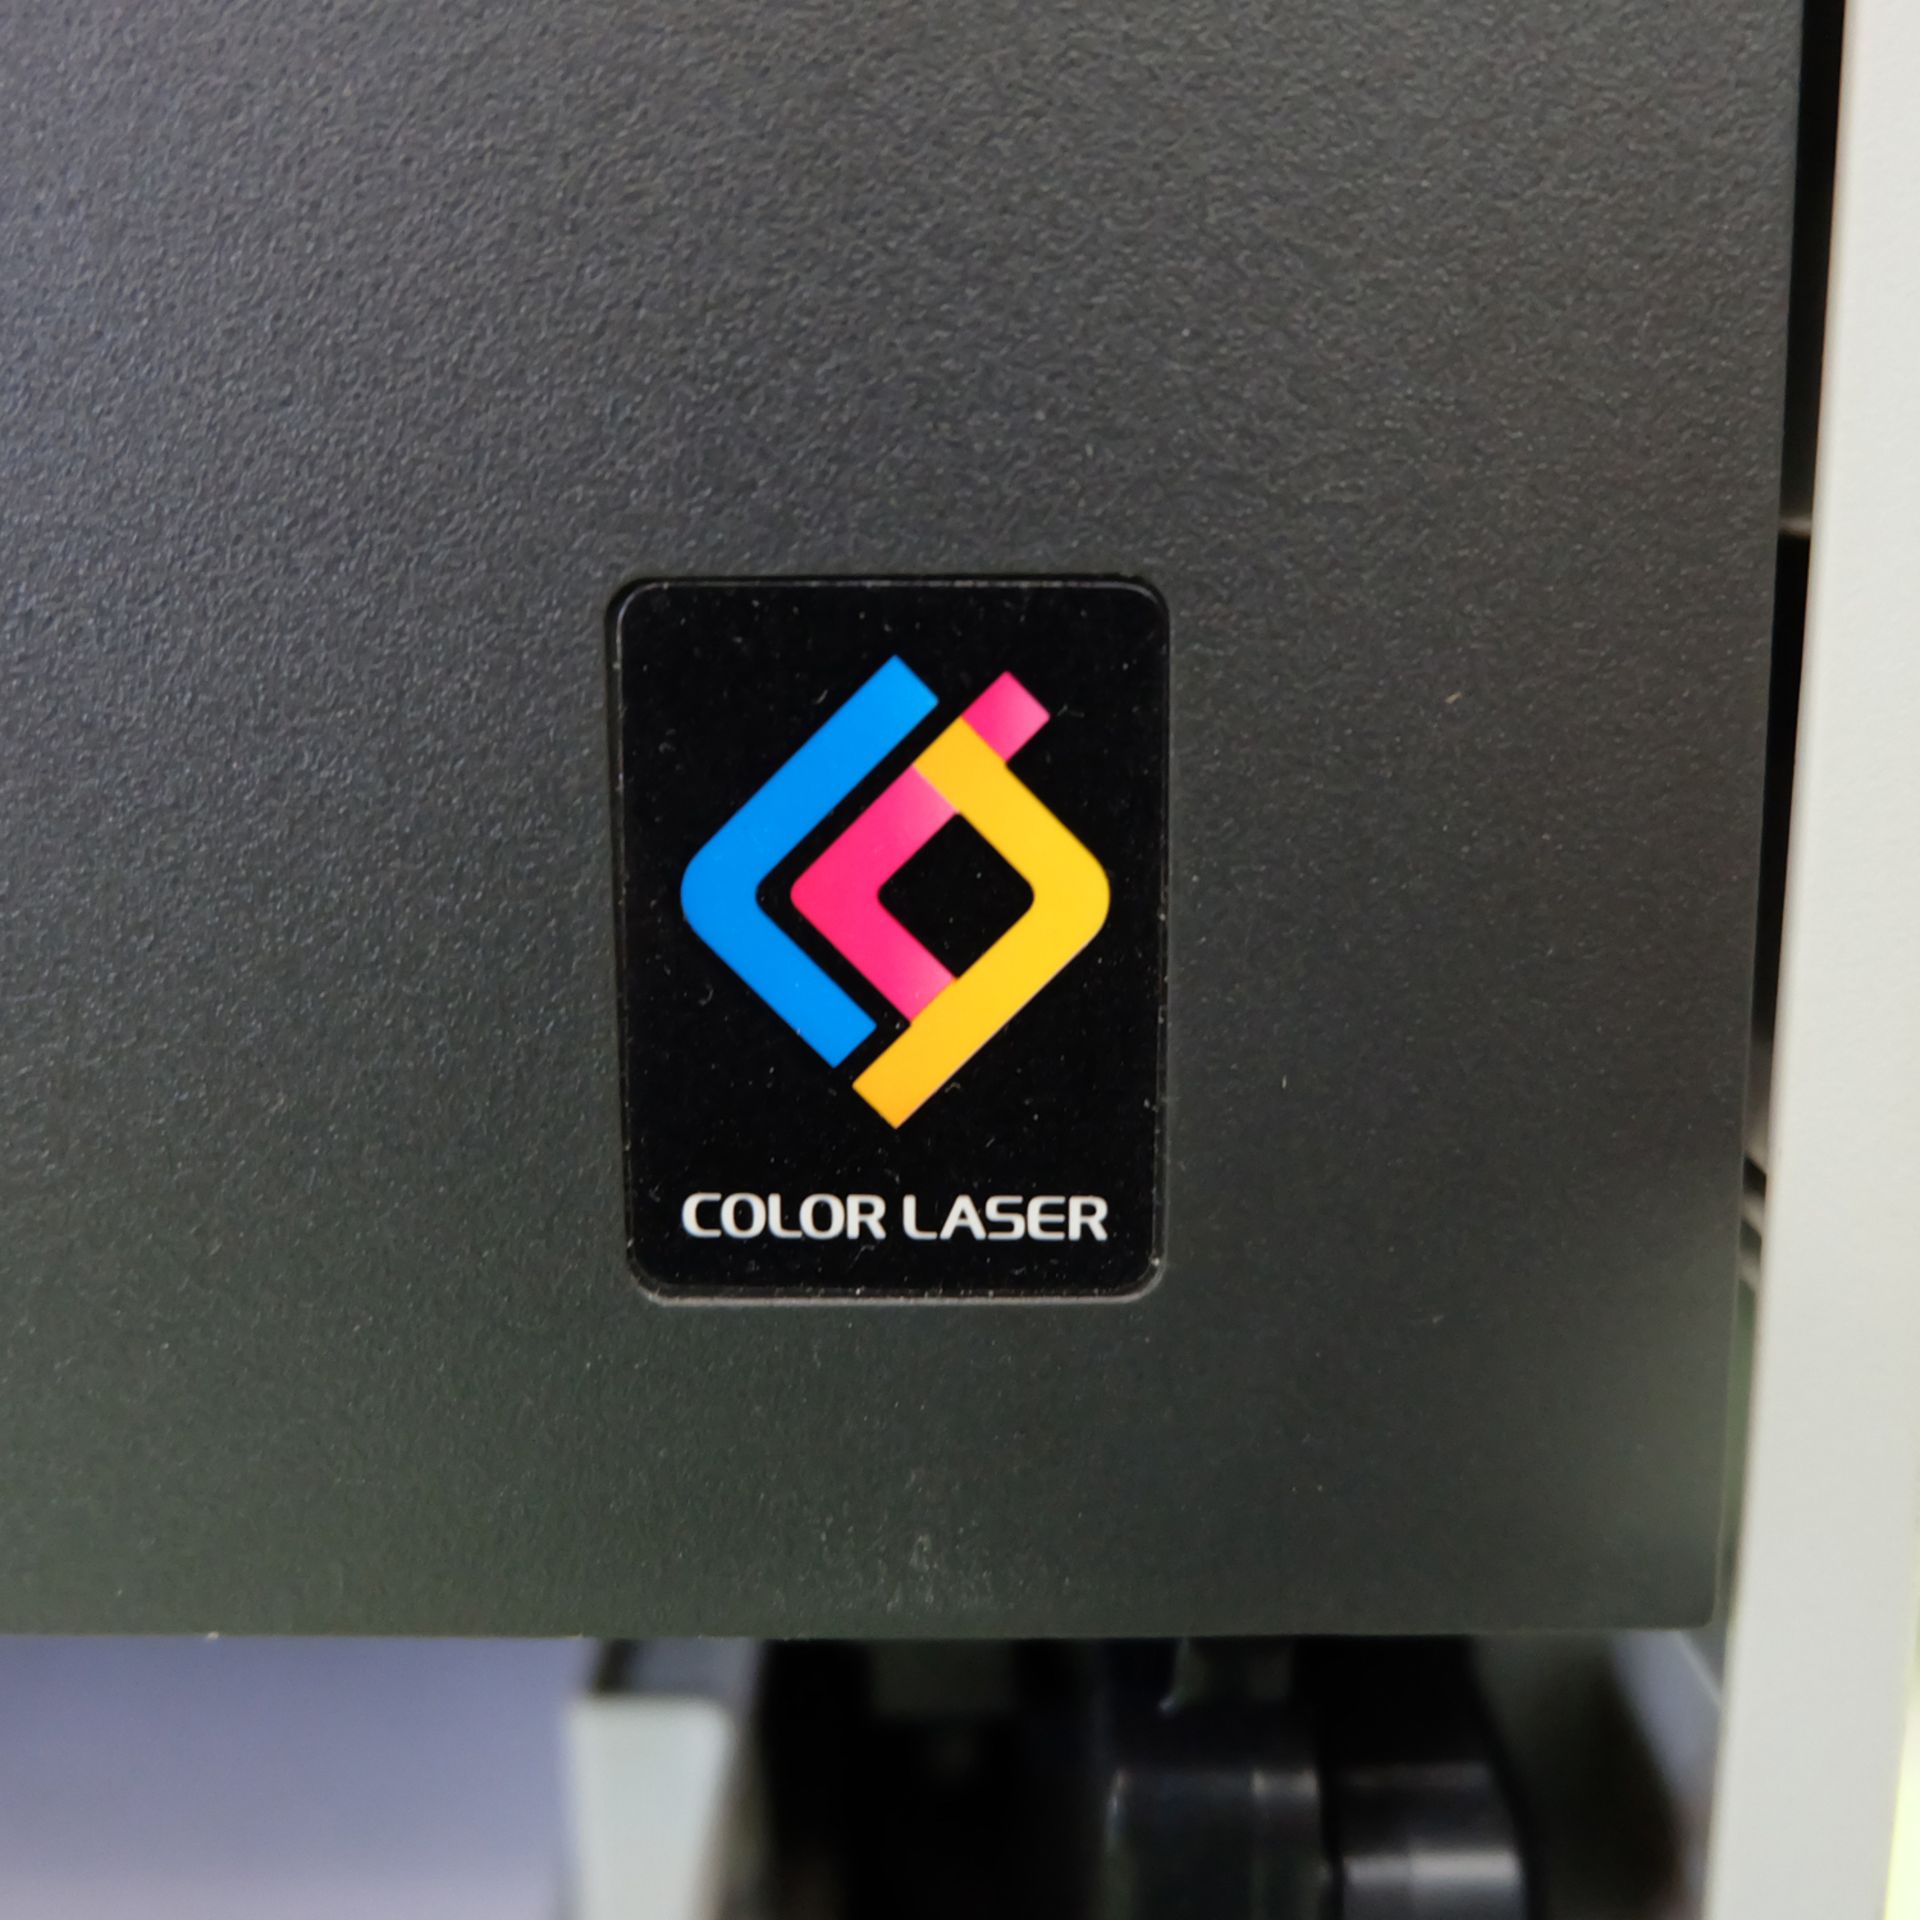 Brother Model HL-4150CDN Colour Laser Printer. - Image 5 of 8